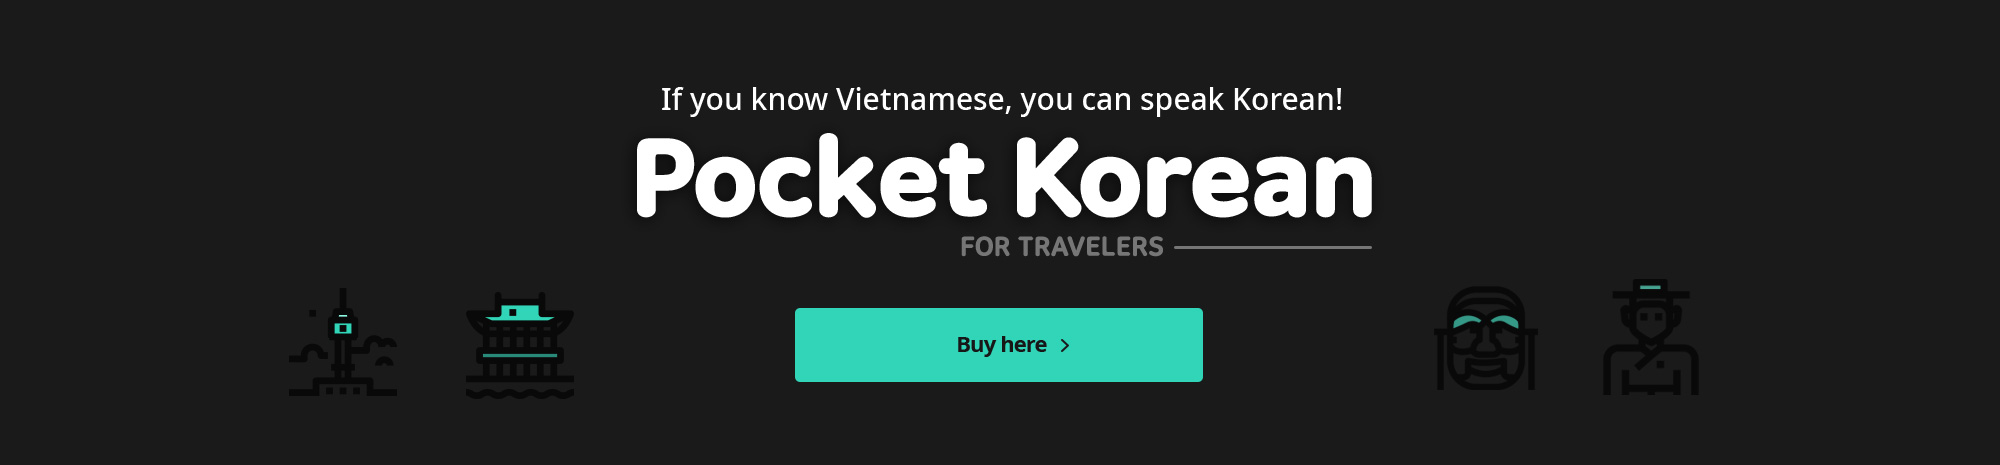 베트남어만 알면, 얼마든지 한국어로 말하며 한국 여행할 수 있어요! Pocket Korean